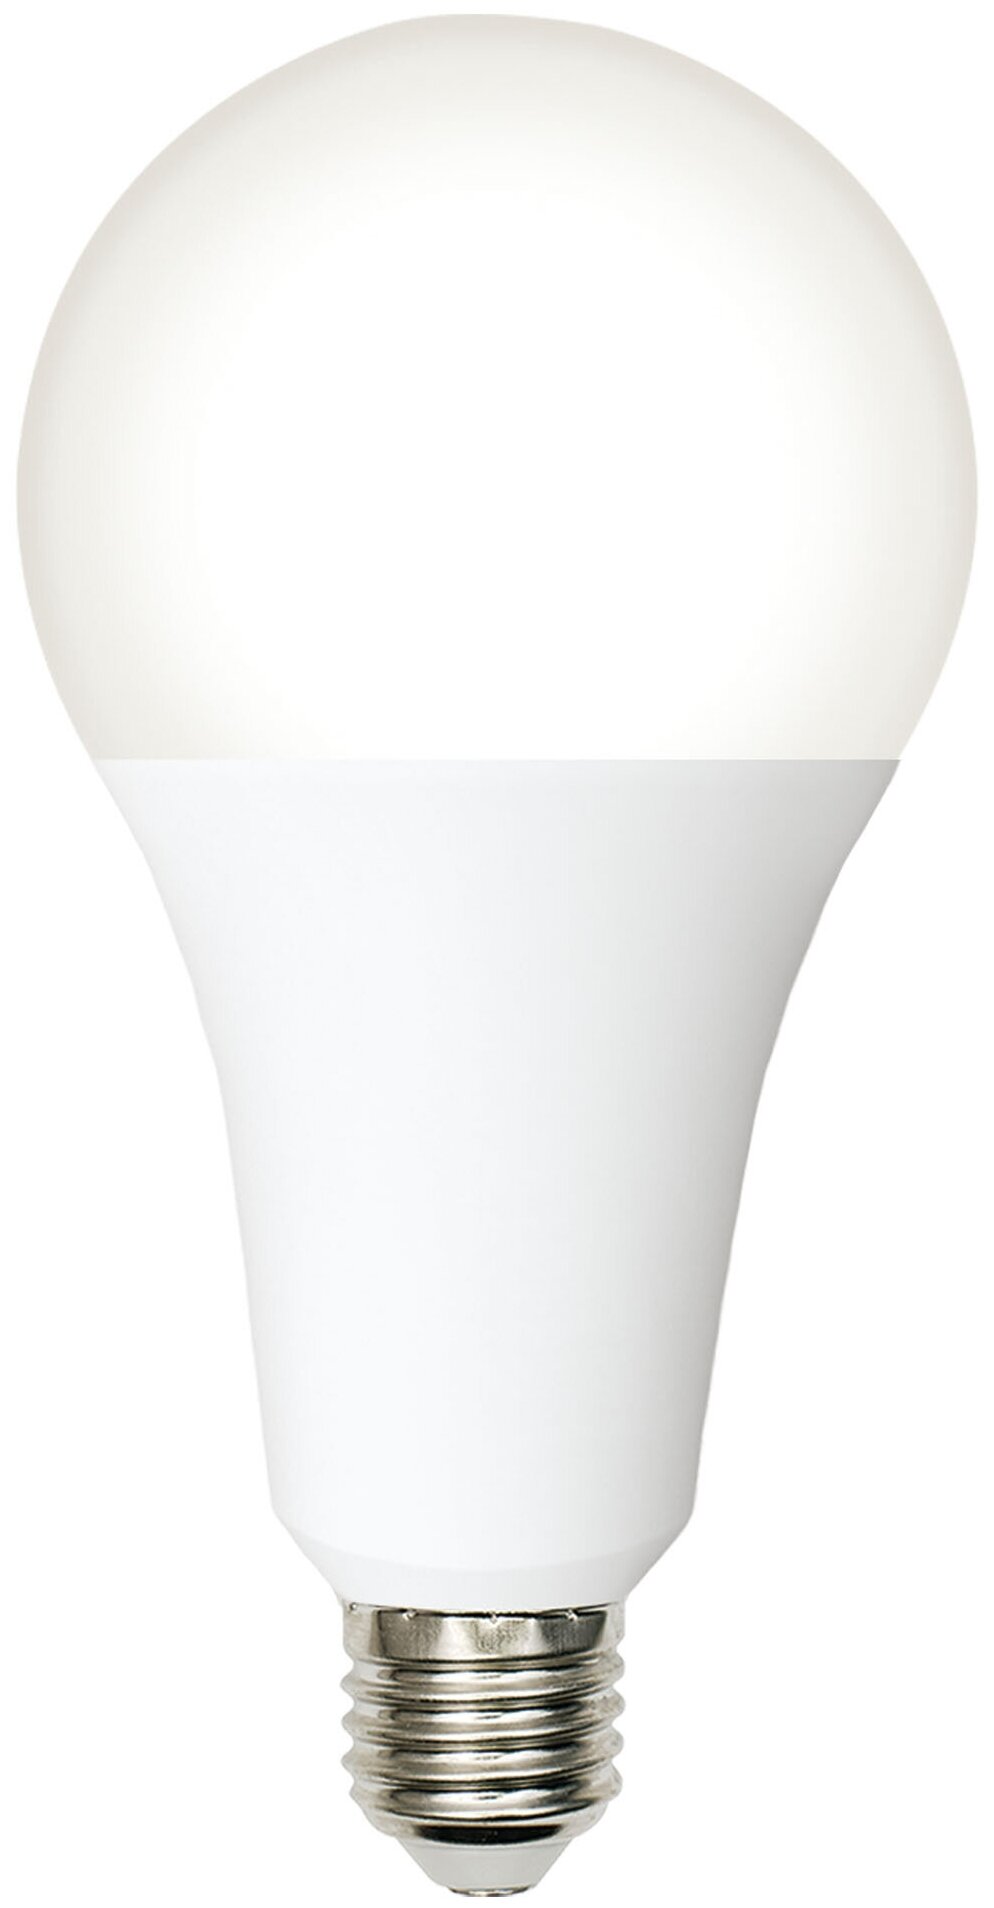 Лампа светодиодная Volpe E27 210-240 В 30 Вт груша матовая 3000 лм нейтральный белый свет